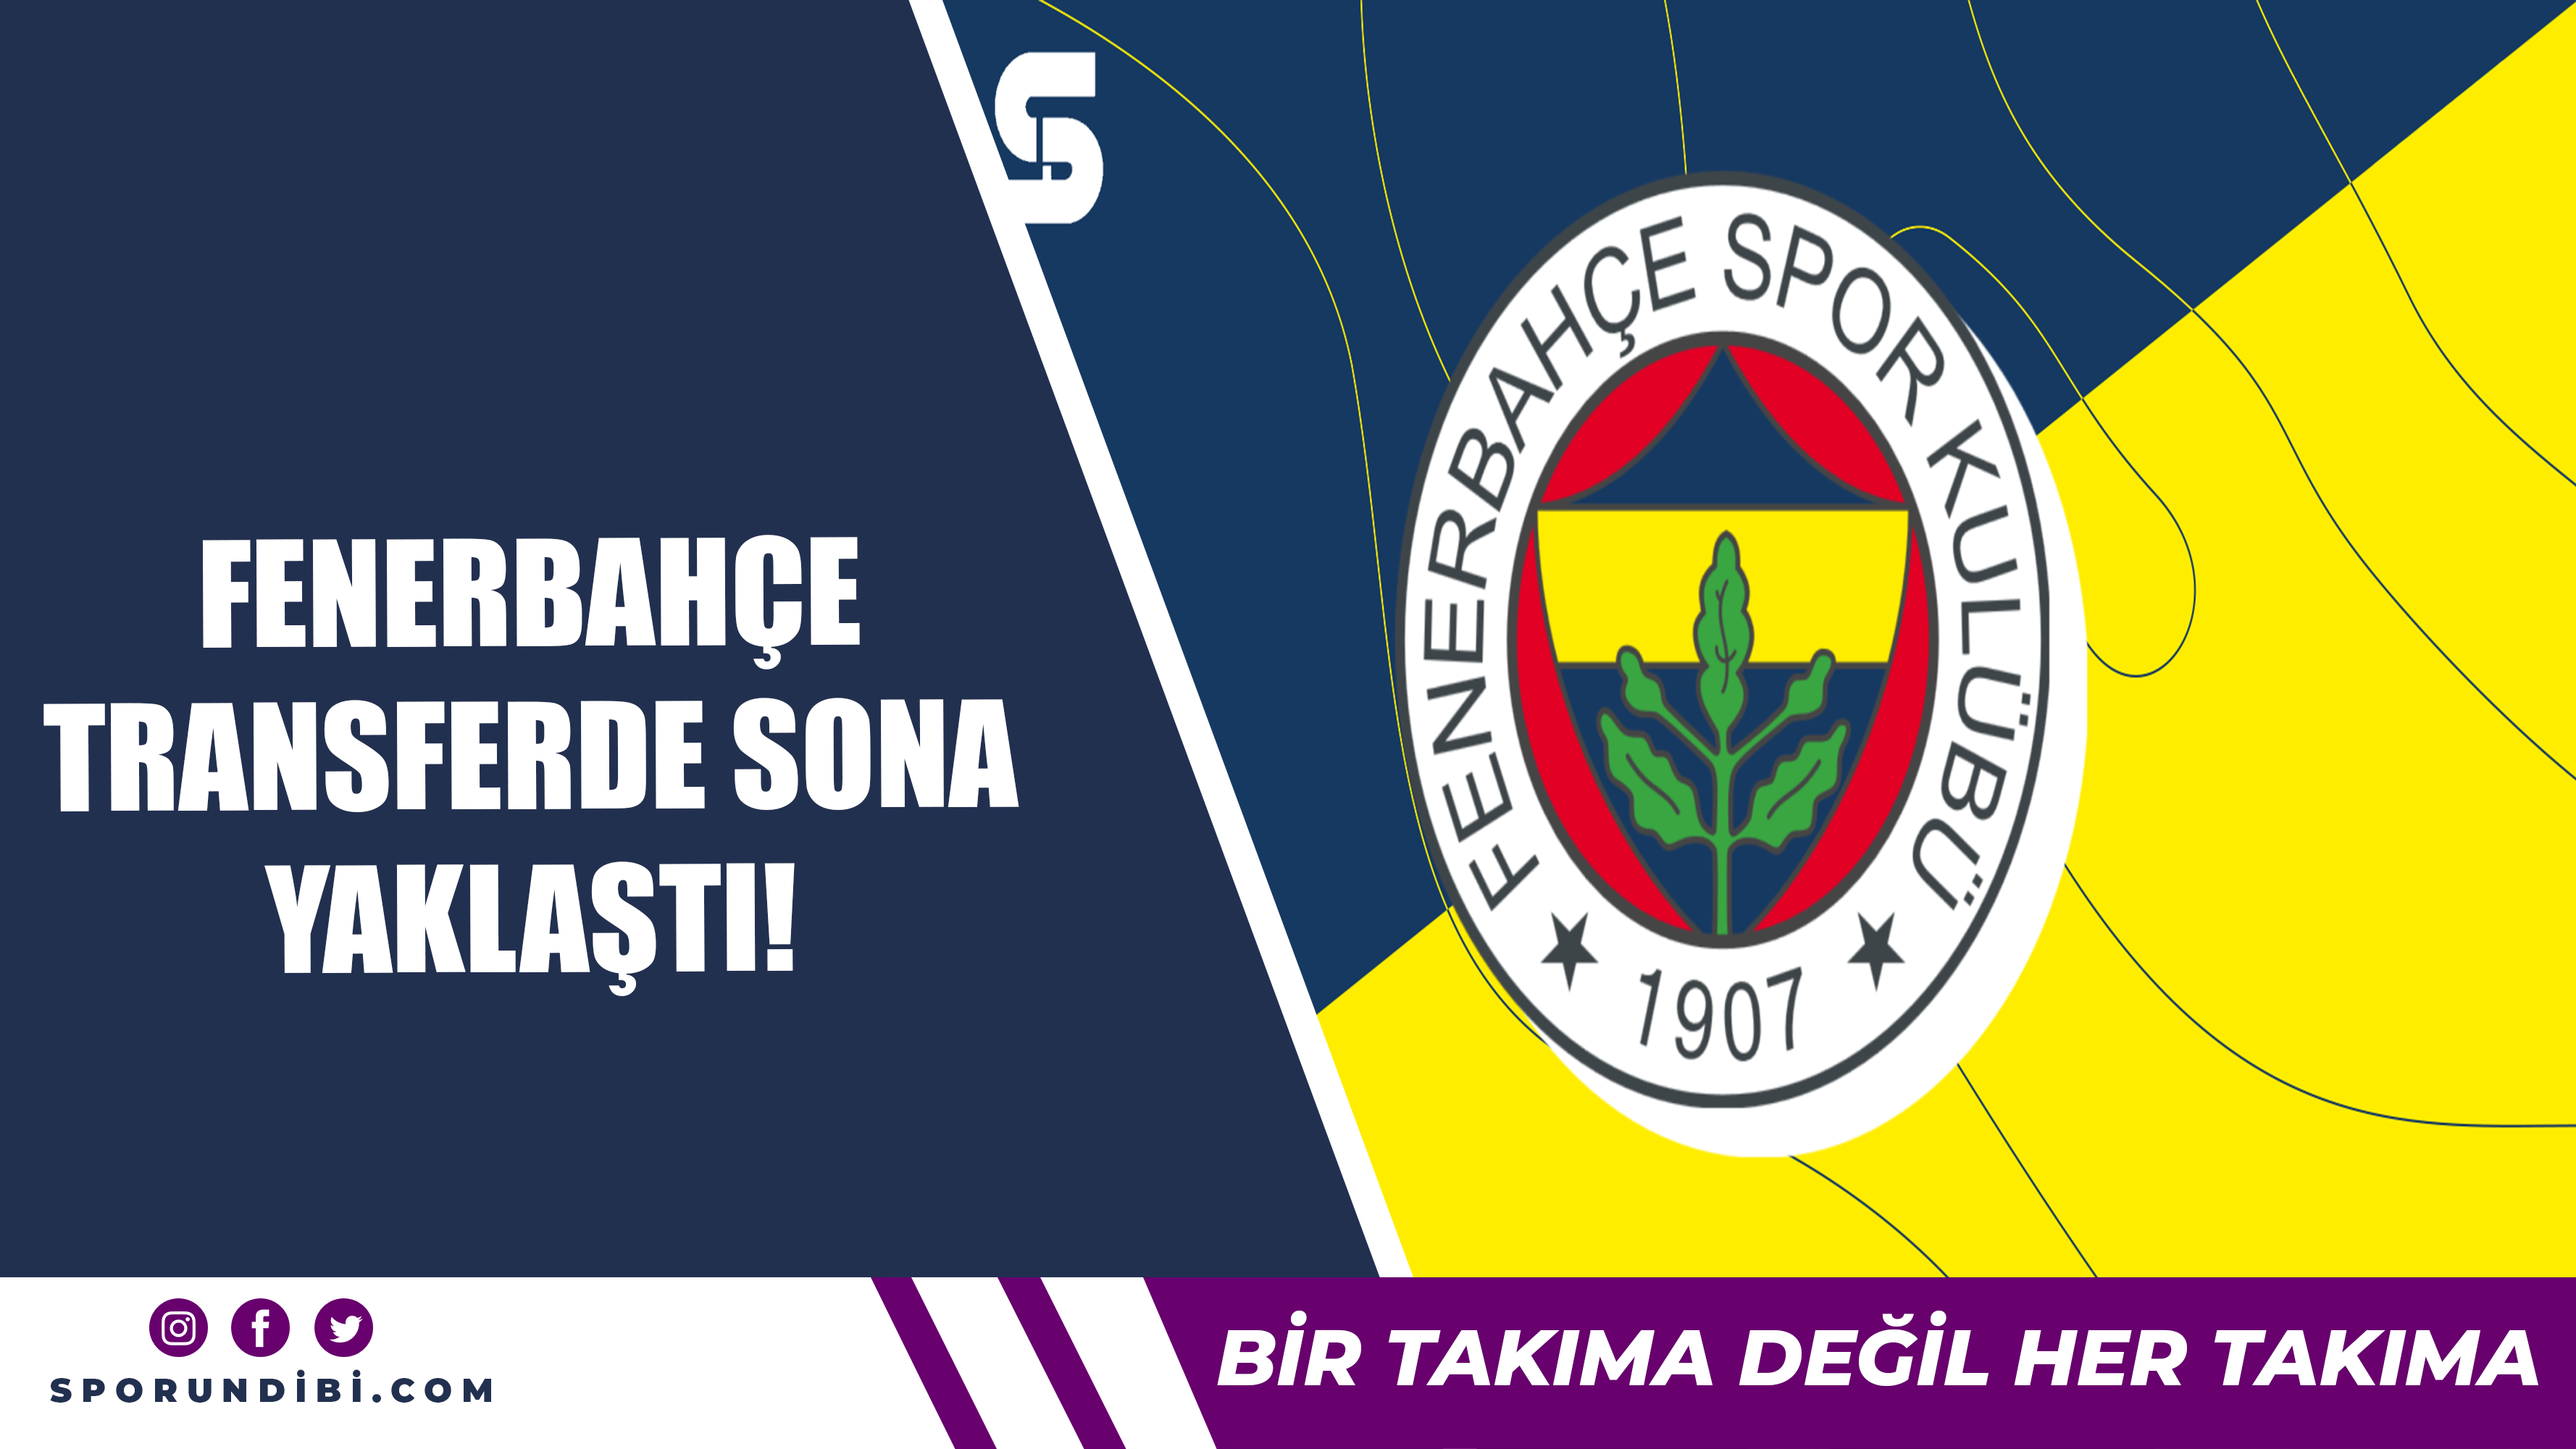 Fenerbahçe transferde sona yaklaştı!